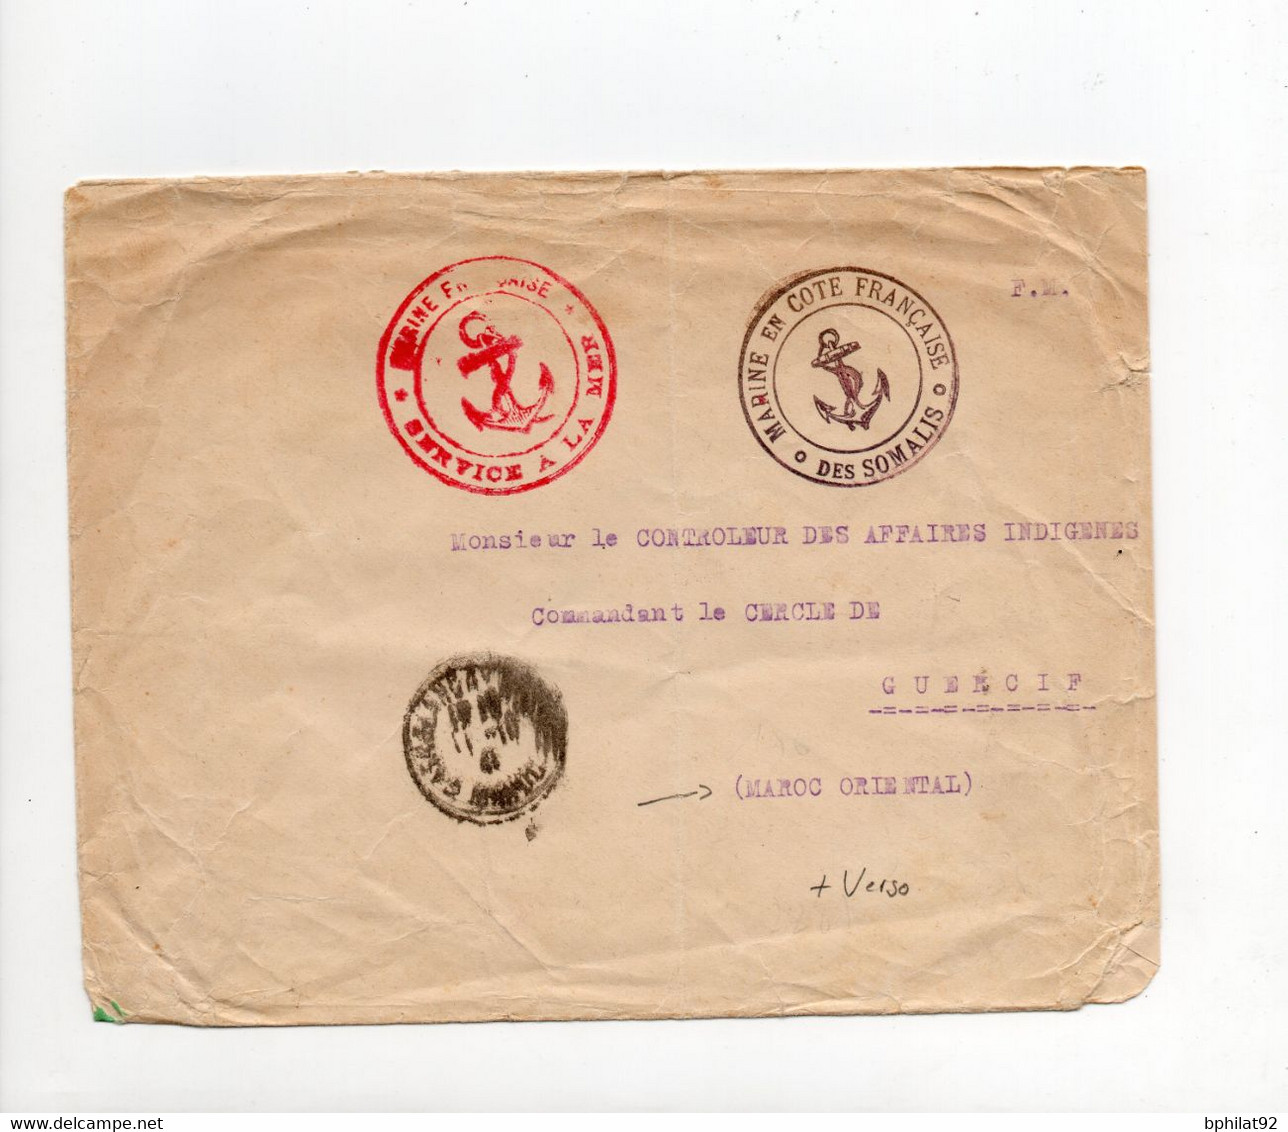 !!! LETTRE EN FRANCHISE DE 1940, CACHET MARINE EN COTE DES SOMALIS FRANCAISE, POUR LE MAROC - Lettres & Documents